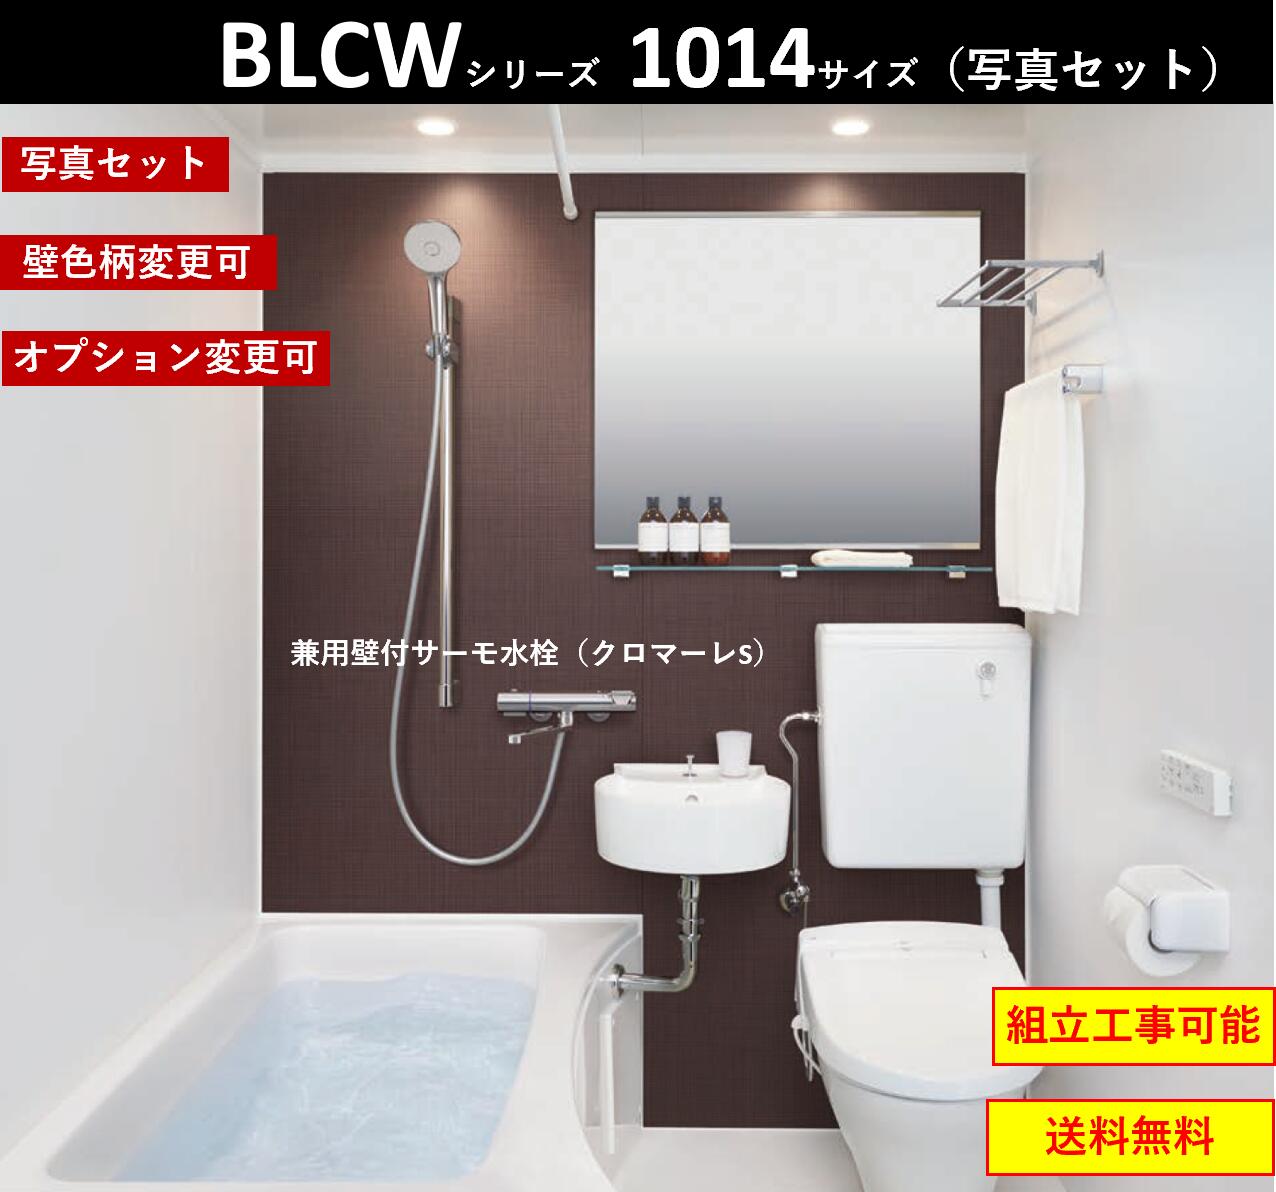 買い大阪★LIXILホテル向け洗面・便器付ユニットバス★BLCW-1116サイズ ユニットバス